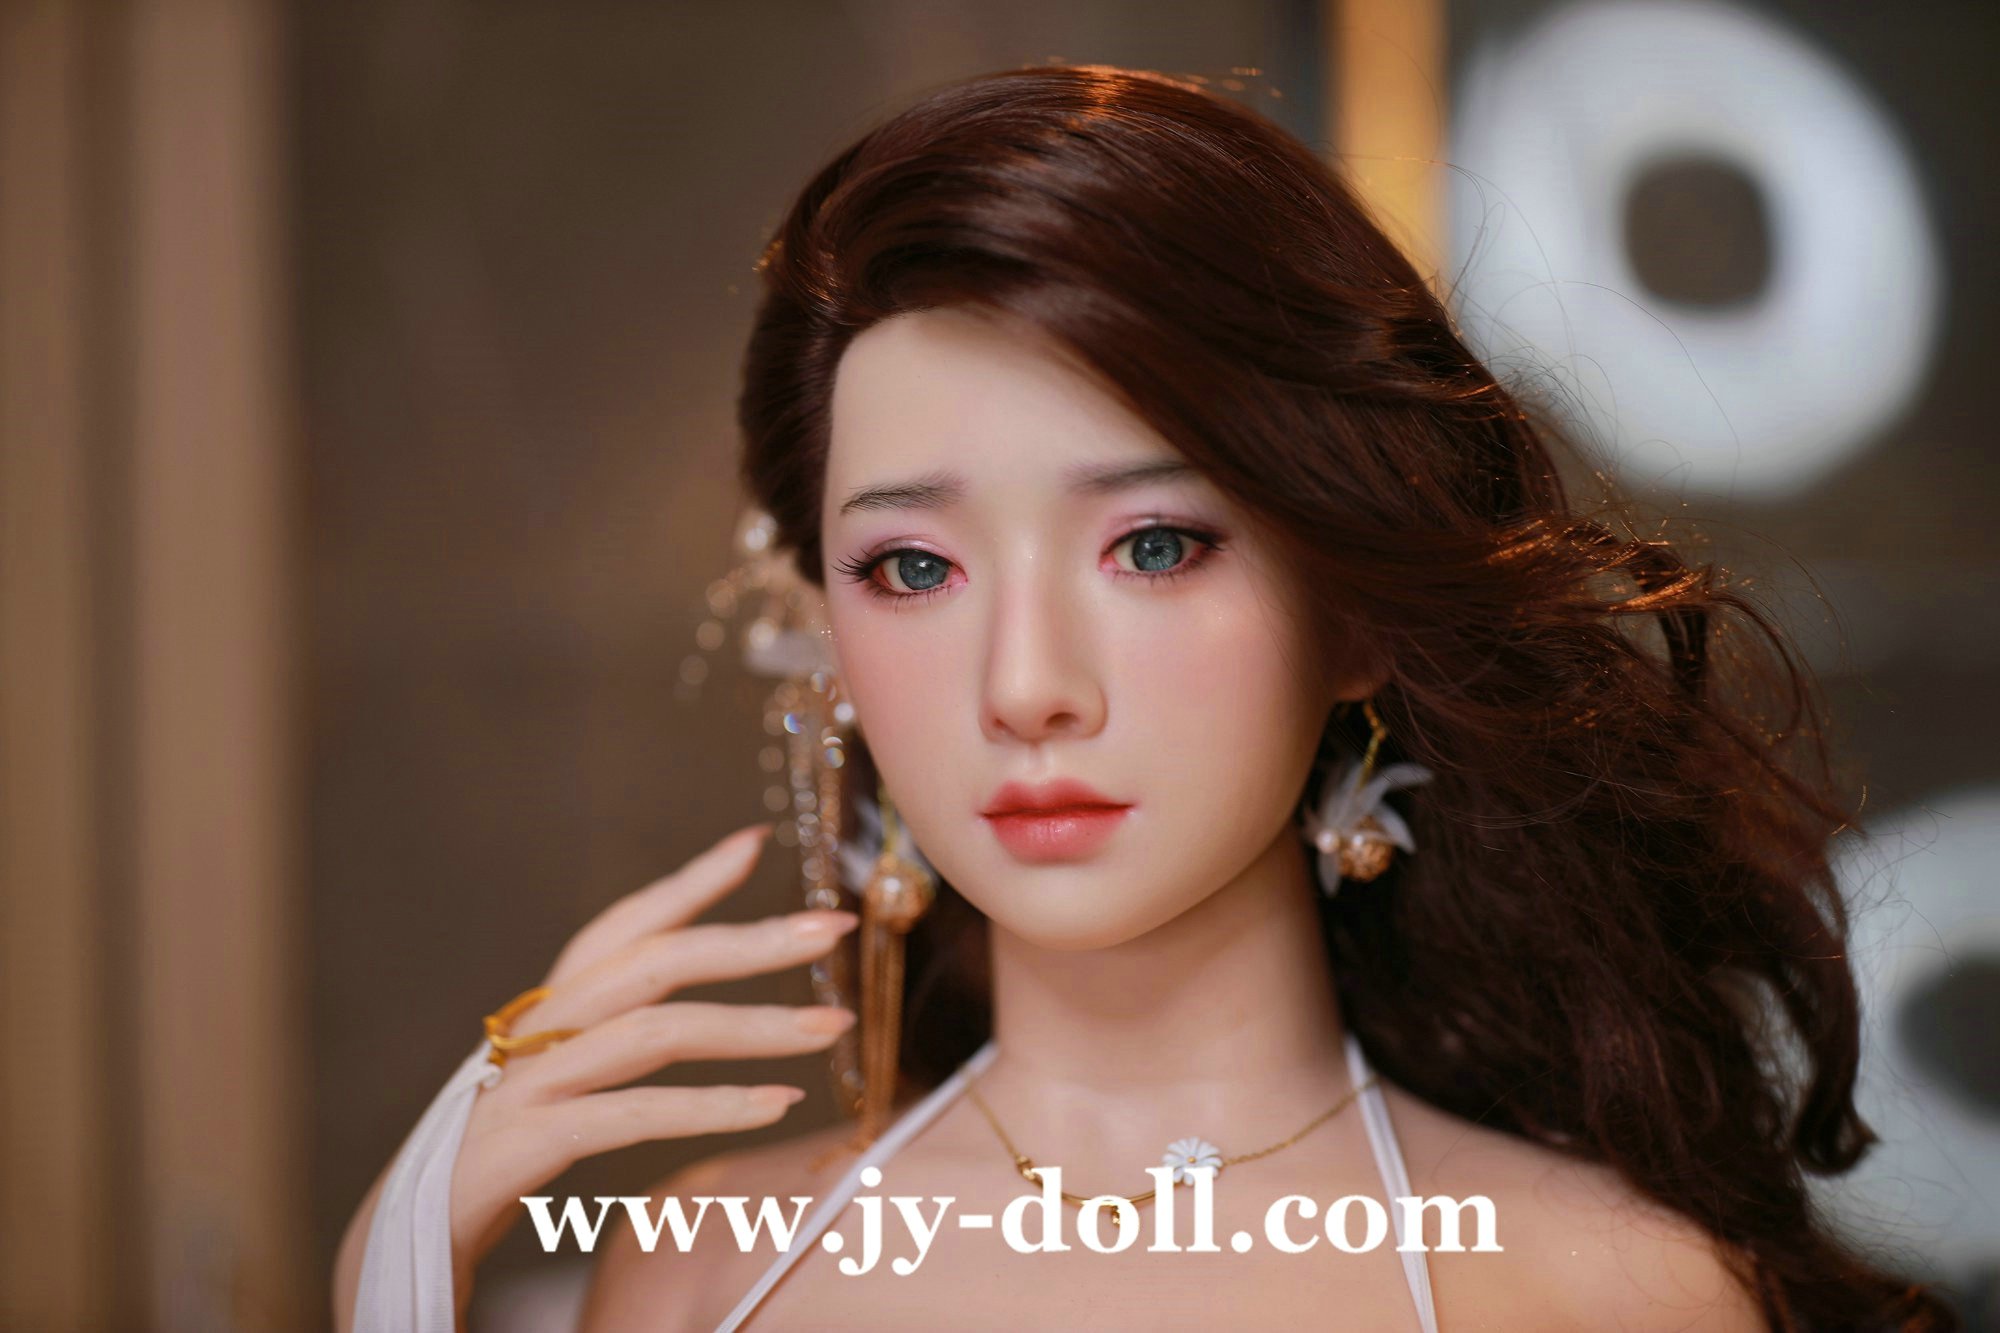 JY Doll 163cm life size full silicone doll Meiyu